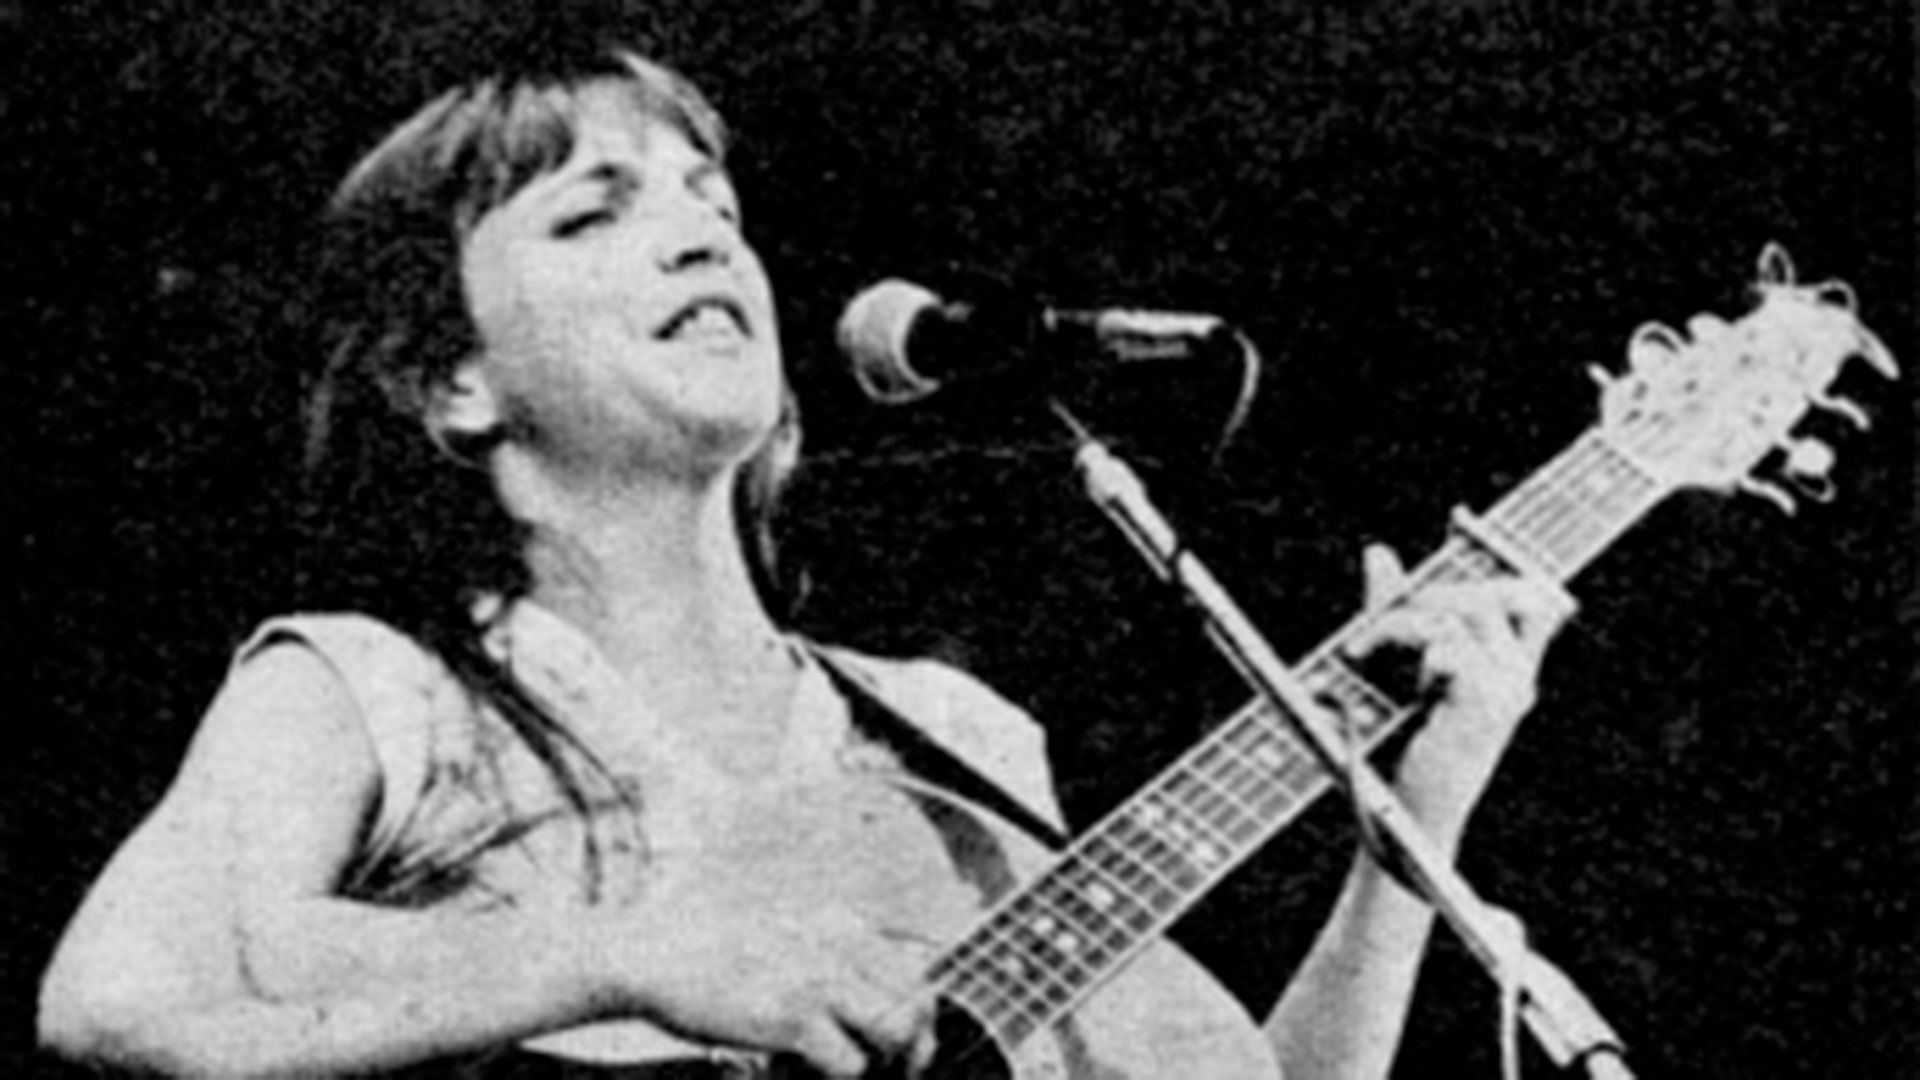 Murió María José Cantilo, una de las mujeres pioneras del rock nacional - Infobae